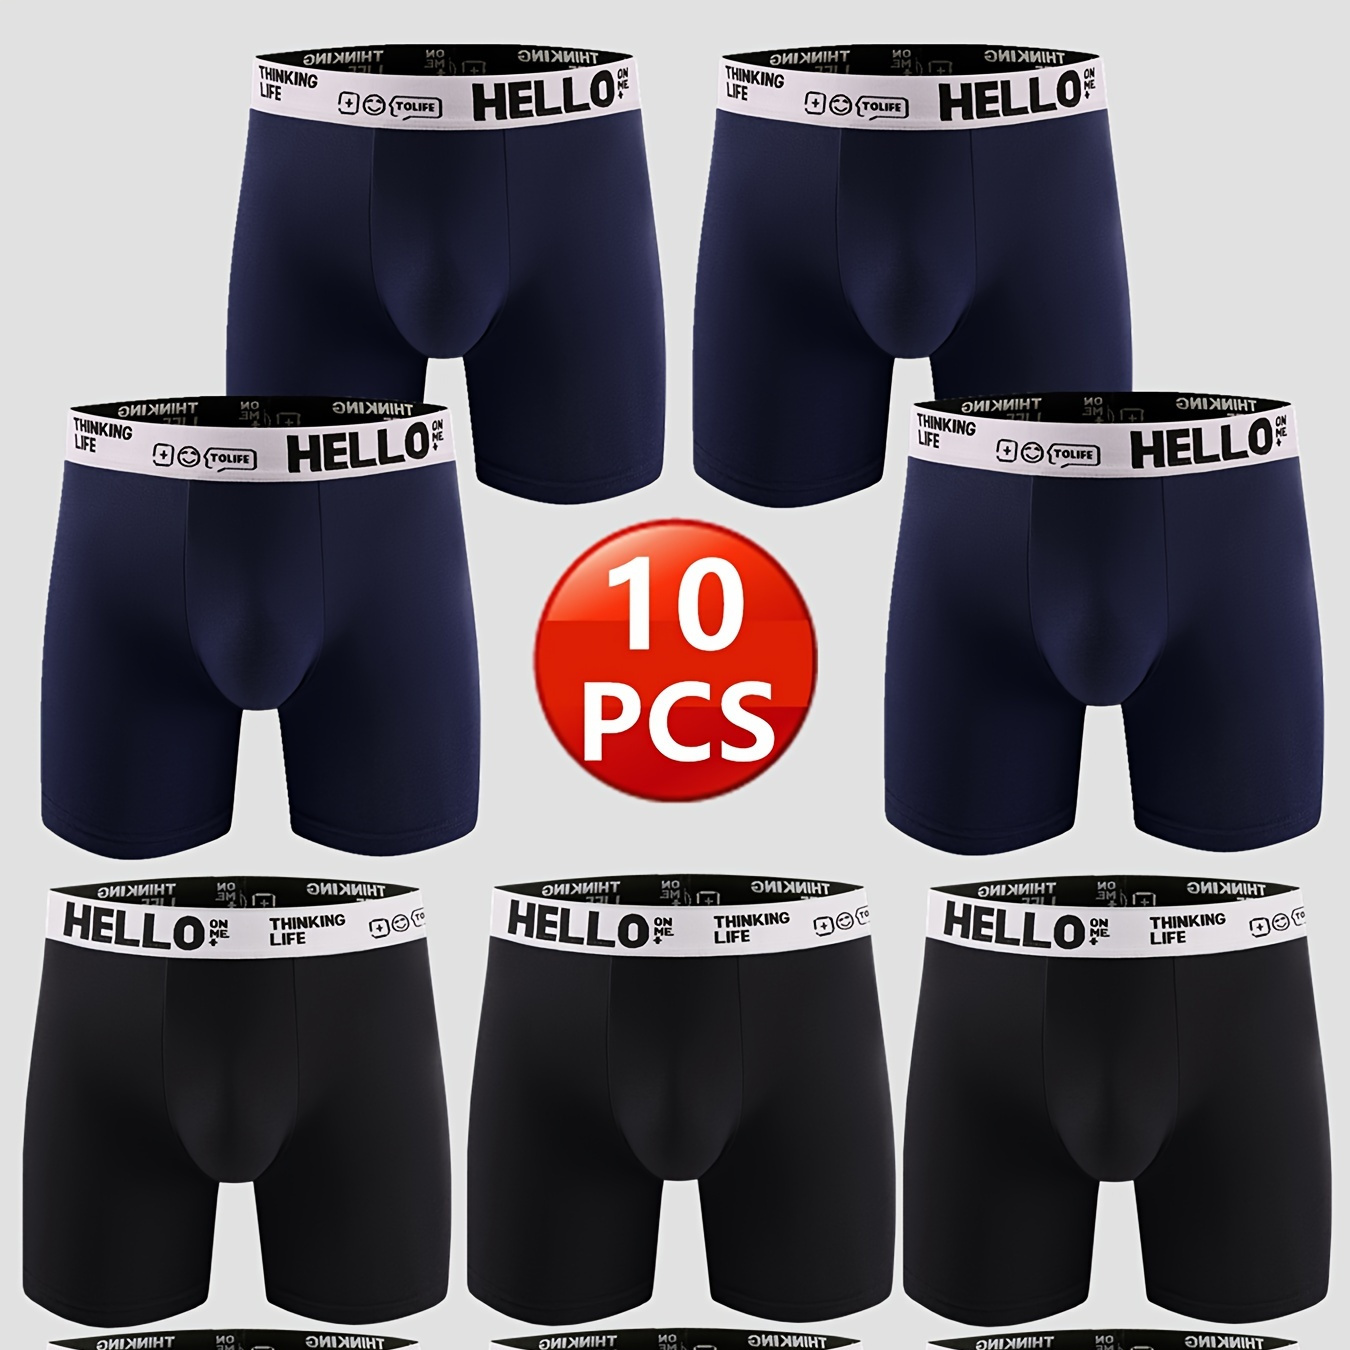 

10pcs Men's Cotton Breathable Comfortable Soft Stretchy Plain Color Boxer Briefs Underwear Set Ideal Gifts For Him